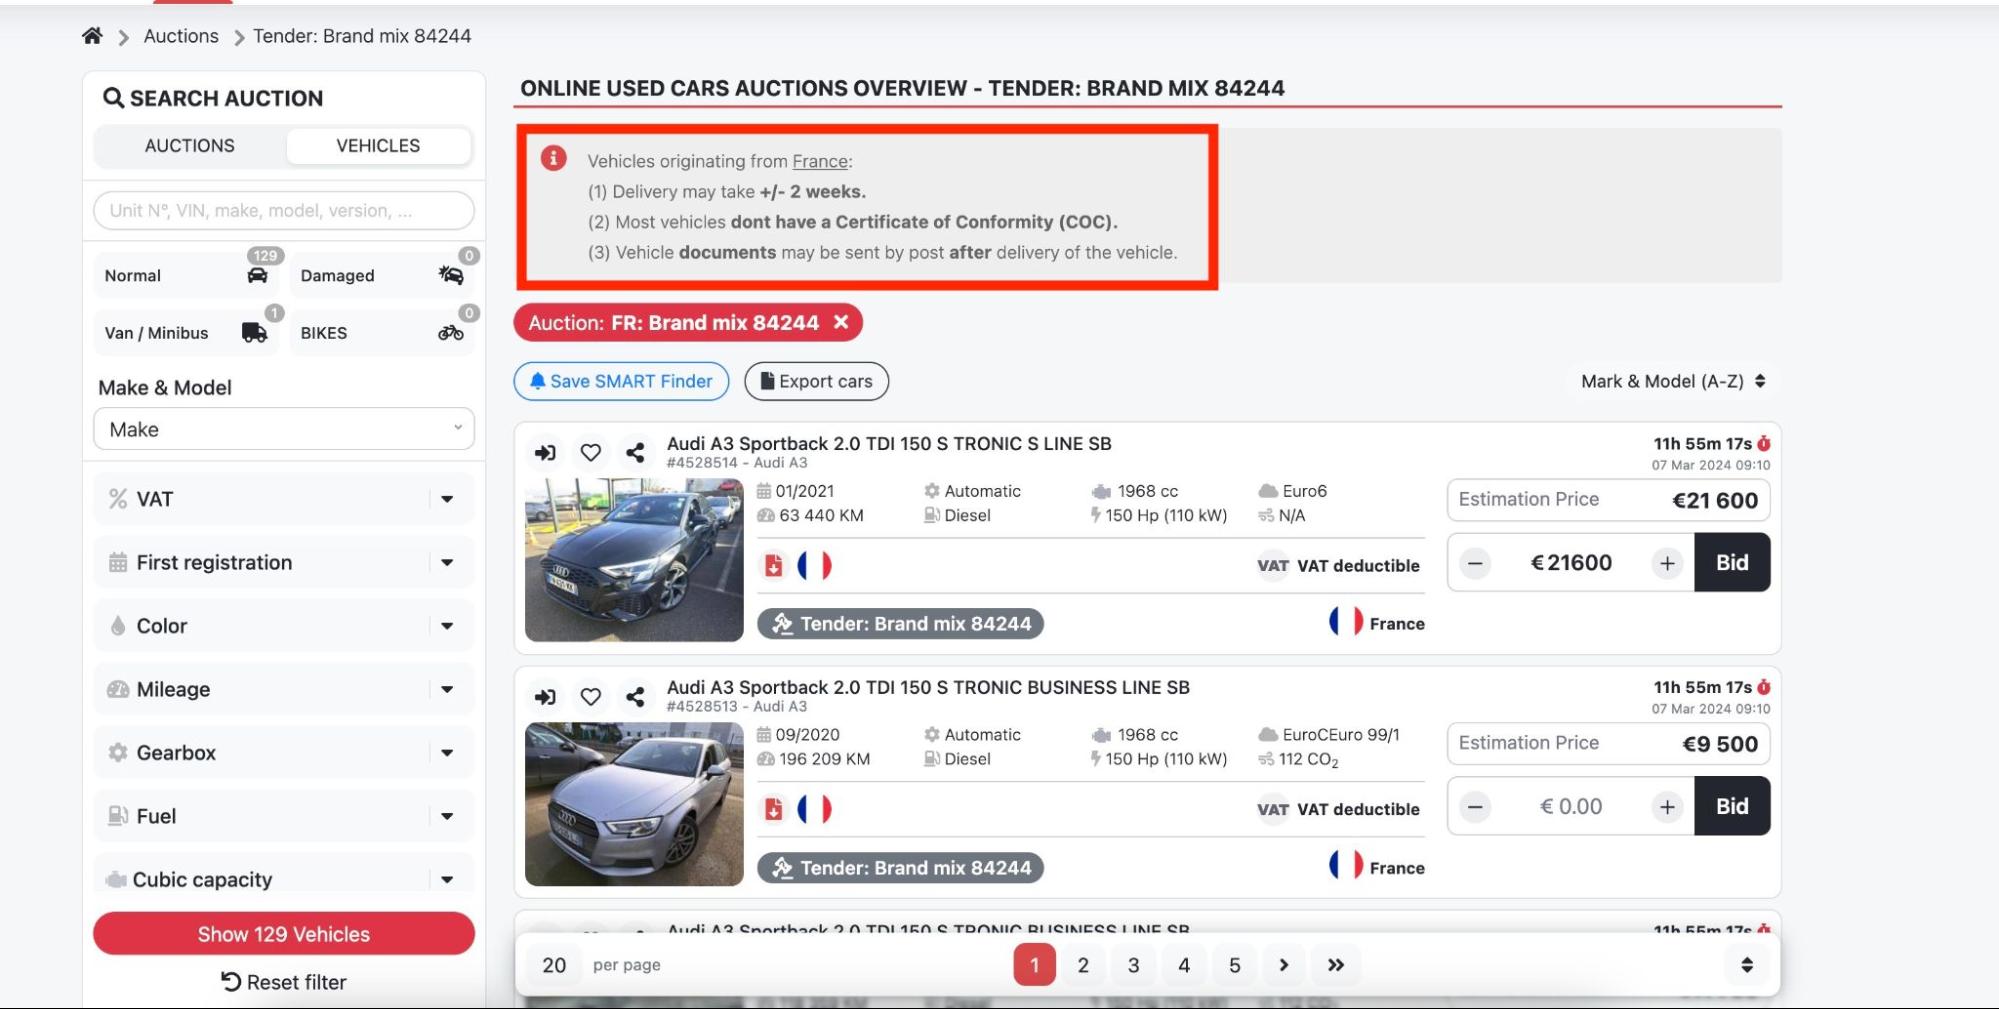 снимок экрана, показывающий информацию об автомобиле на аукционах ecarstrade